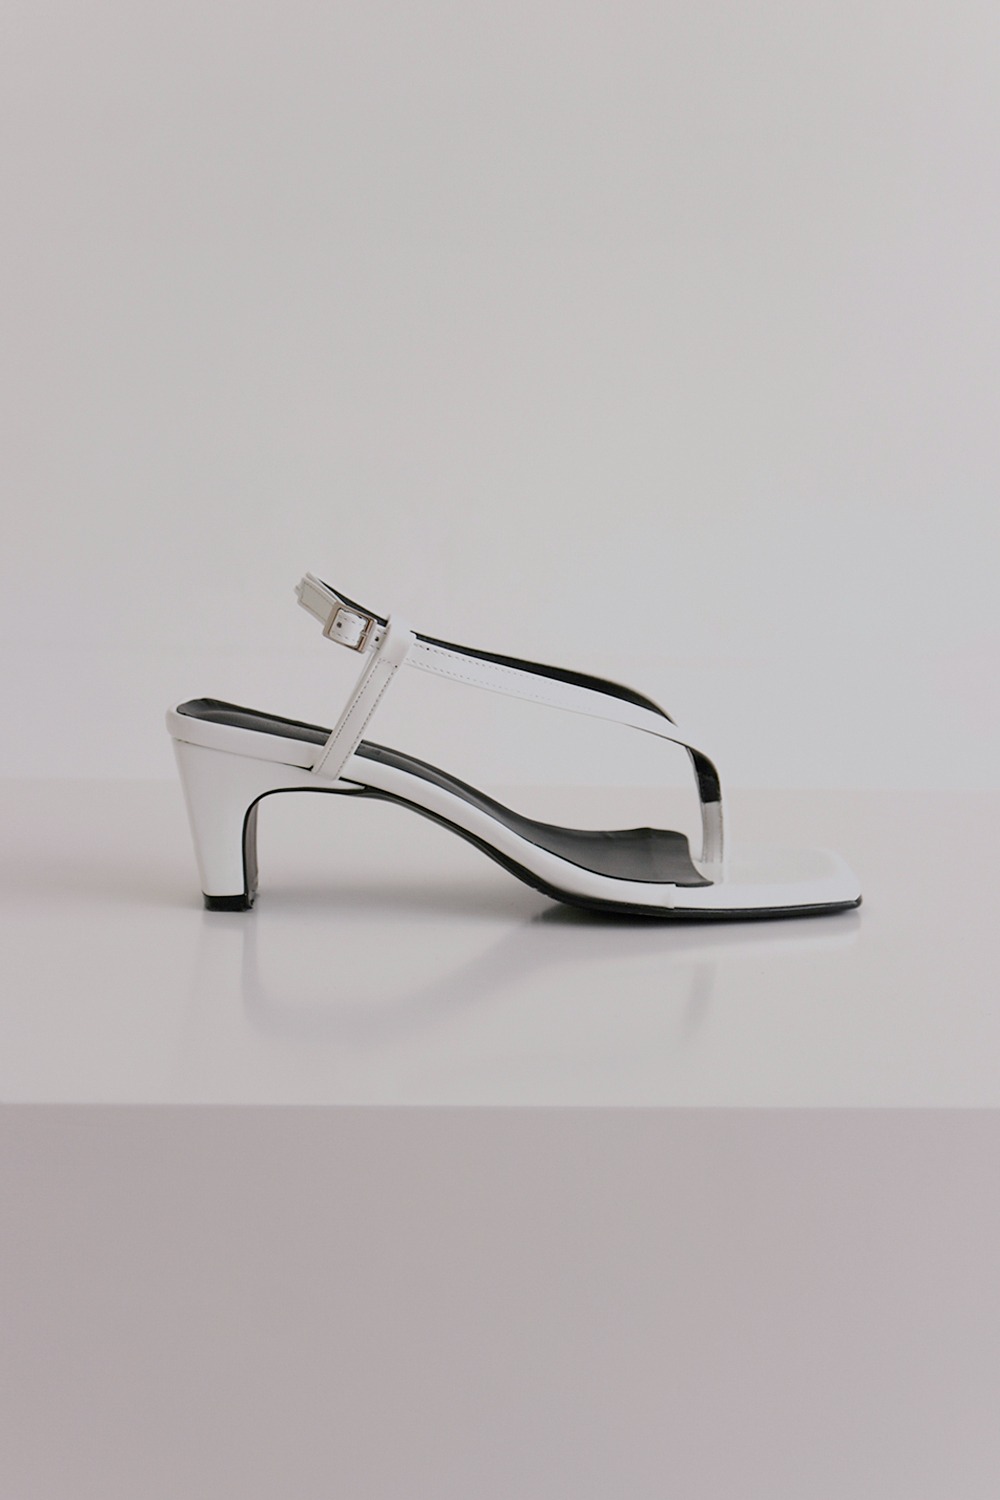 ANTHÈSE Pierre flip-flop heel, white (10%)